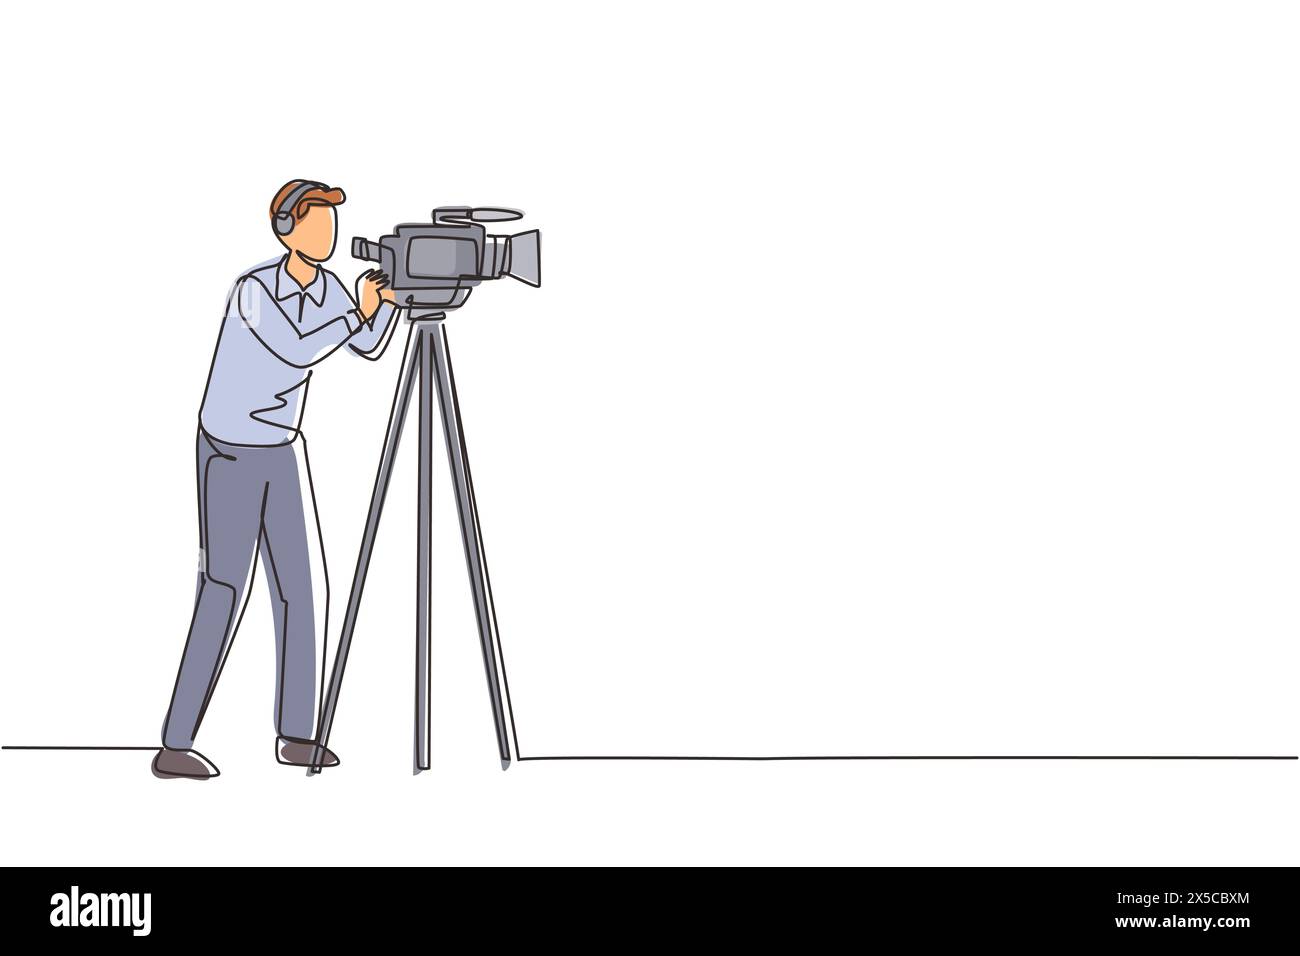 Einfache einzeilige Zeichnung professioneller Kameramann, Bediener, Videofilmer mit Kamera. Dreharbeiten von Filmproduktionen, Ausstrahlung von Nachrichten oder fernsehsendungen live. C Stock Vektor